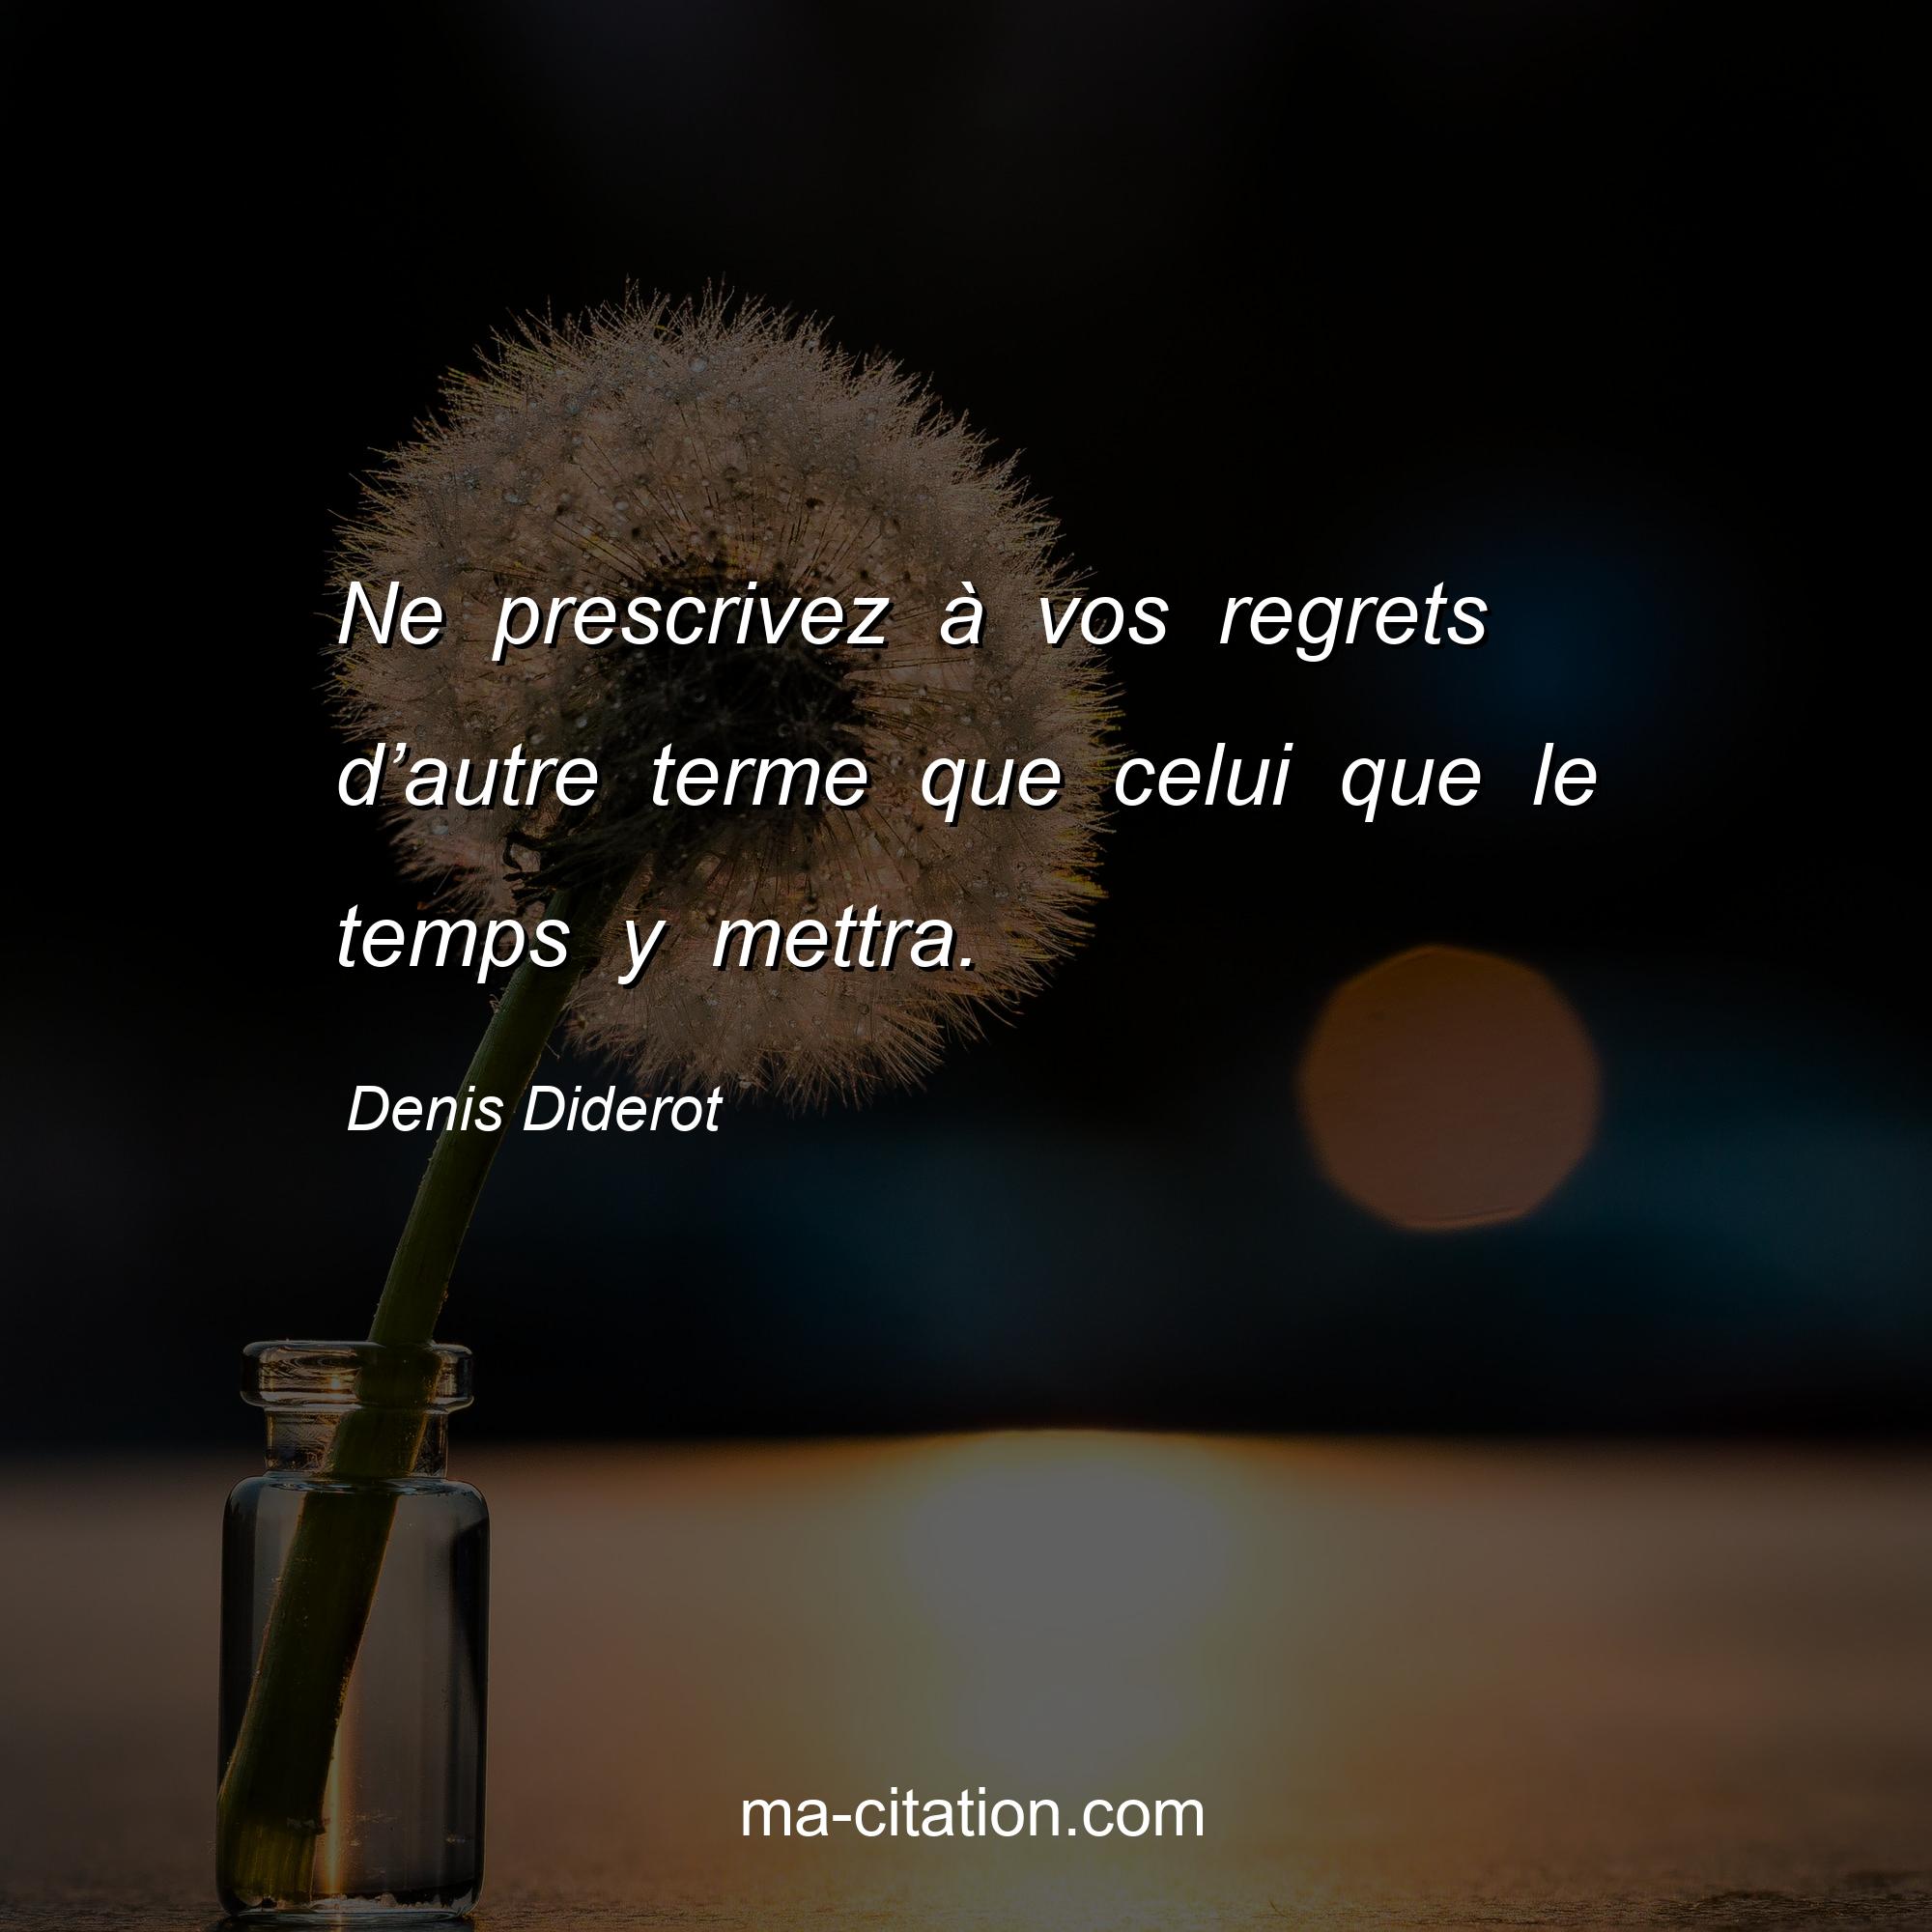 Denis Diderot : Ne prescrivez à vos regrets d’autre terme que celui que le temps y mettra.